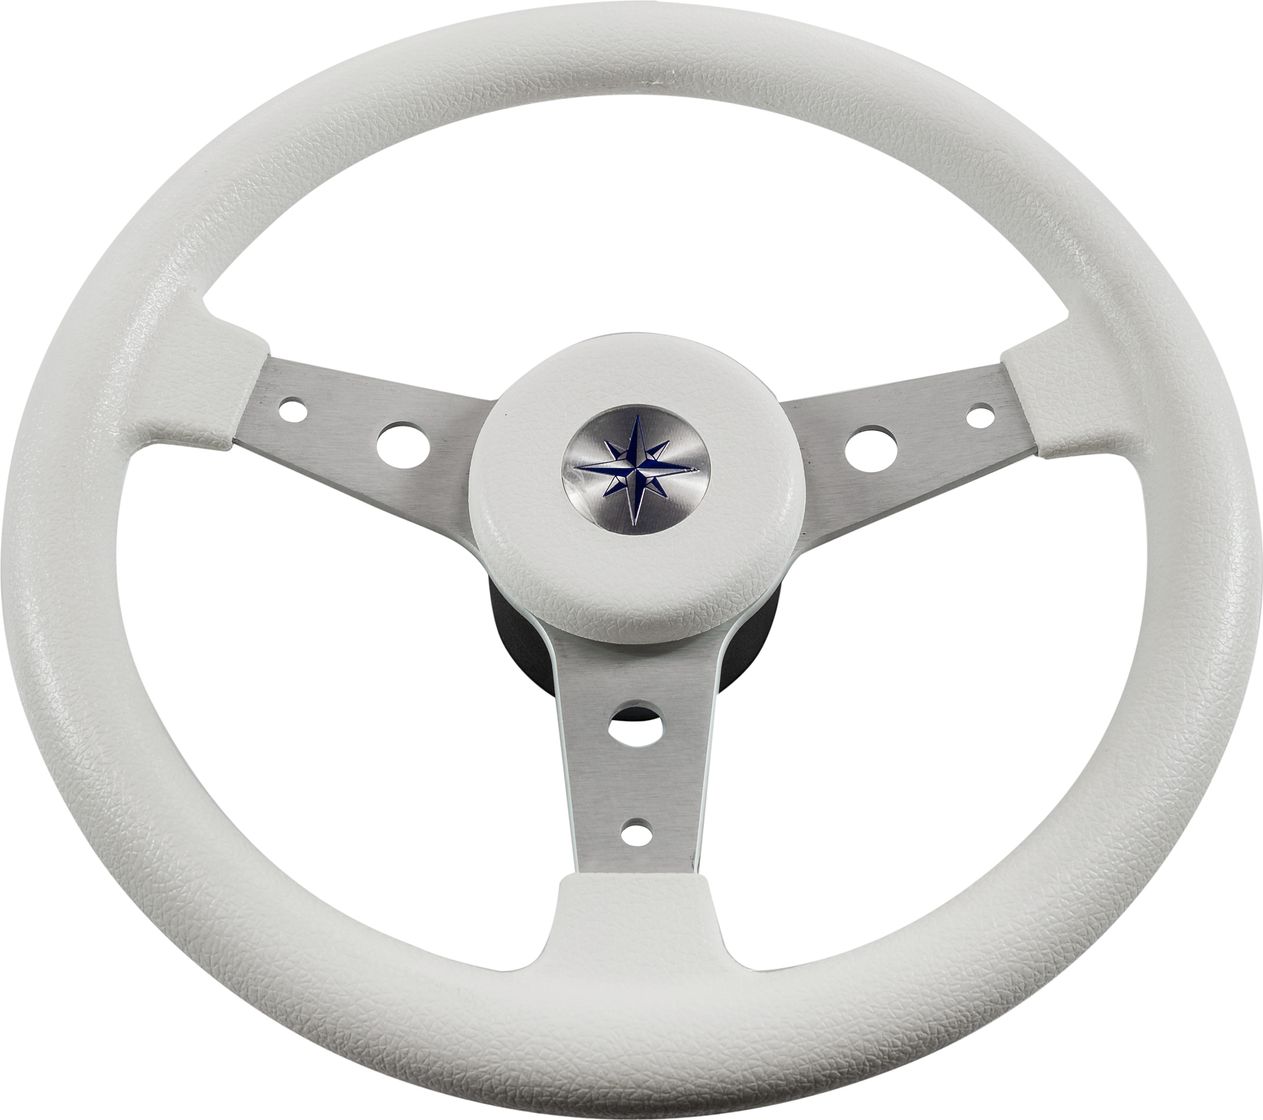 Рулевое колесо DELFINO обод белый,спицы серебряные д. 340 мм VN70401-08 рулевое колесо matrix белый обод more 10016474